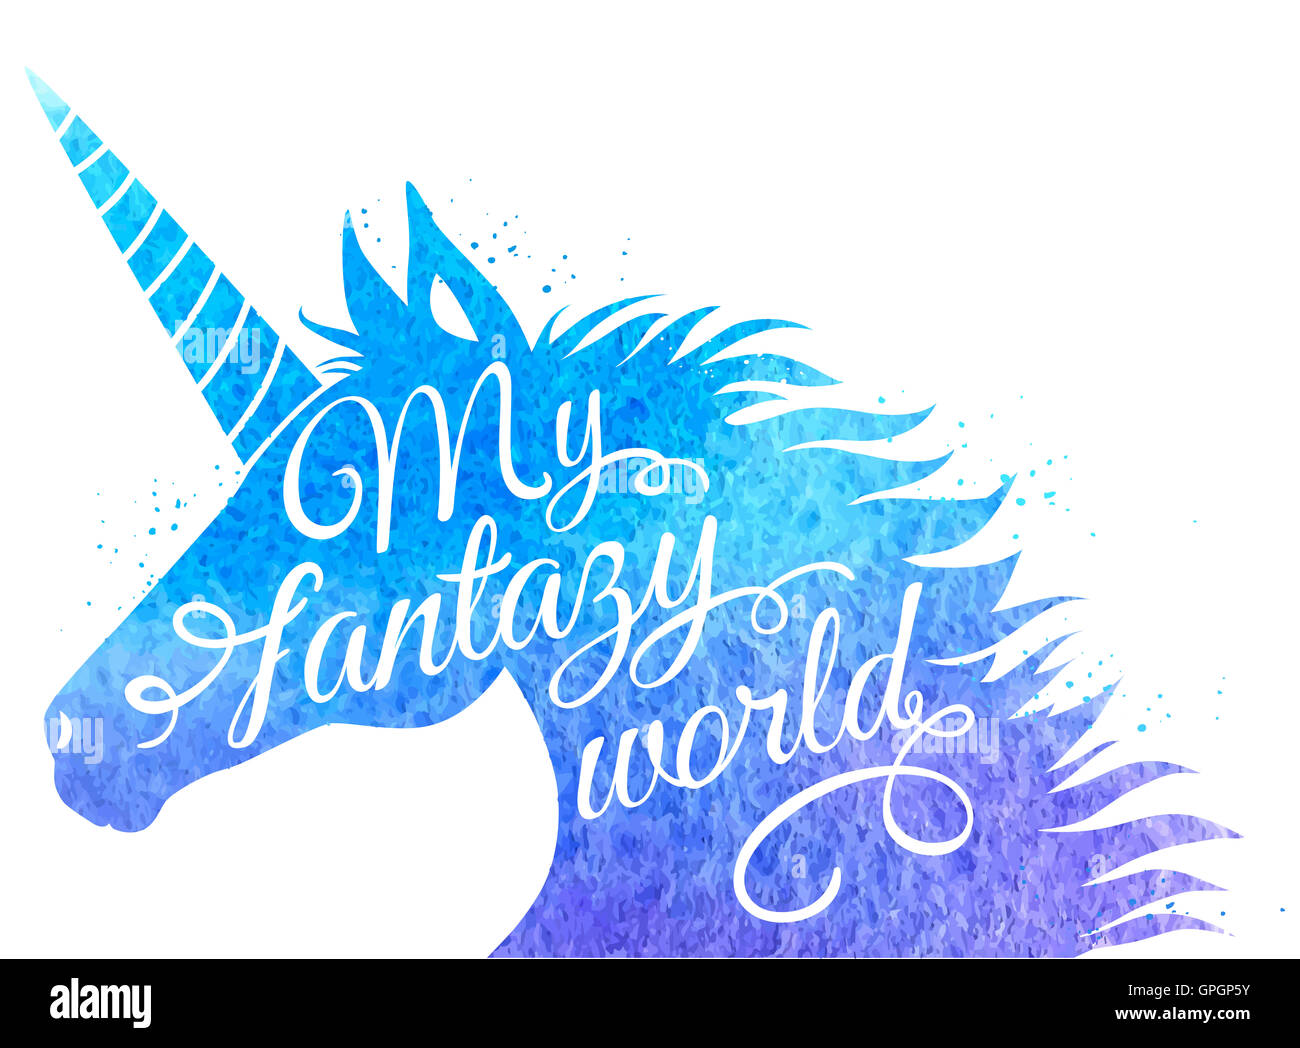 Silhouette d'une licorne avec l'inscription "mon monde de fantaisie". Contexte aquarelle bleue. Banque D'Images